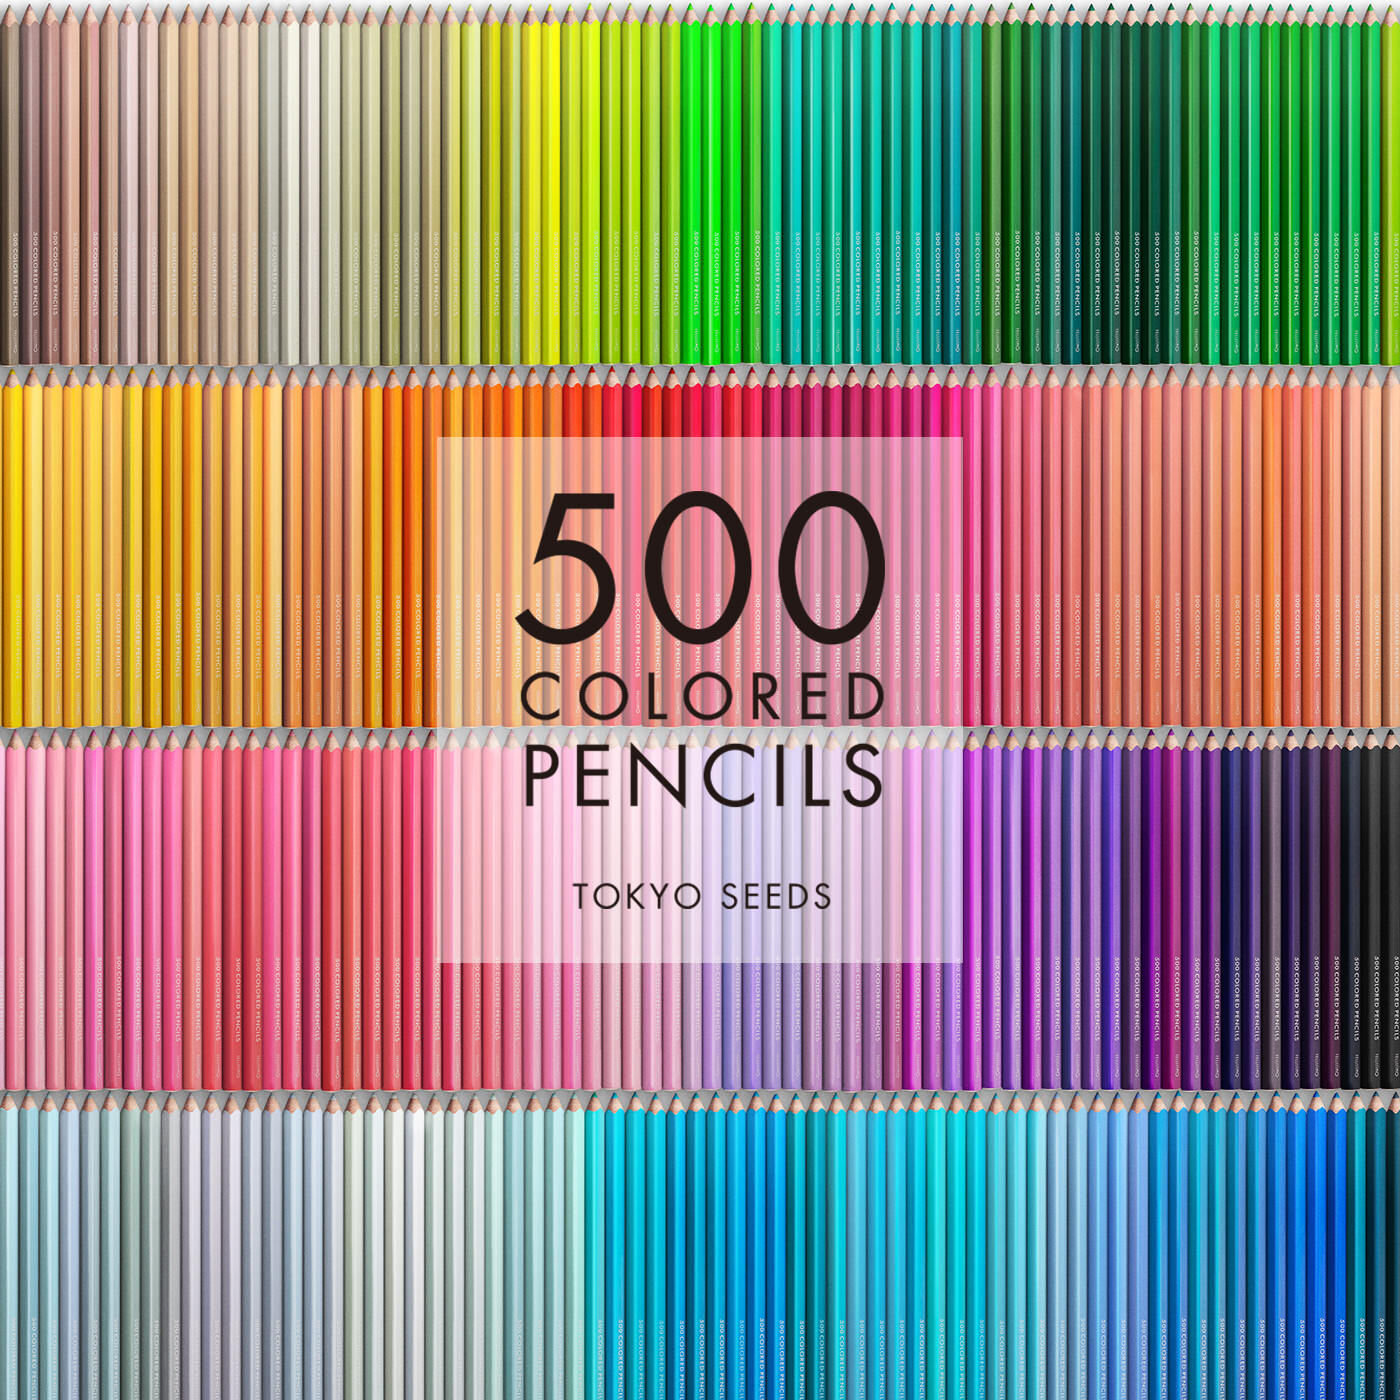 Real Stock|【430/500 SERENE SECLUSION】500色の色えんぴつ TOKYO SEEDS|1992年、世界初の「500色」という膨大な色数の色えんぴつが誕生して以来、その販売数は発売当初から合わせると、世界55ヵ国10万セット以上。今回、メイド・イン・ジャパンにこだわり、すべてが新しく生まれ変わって登場しました。